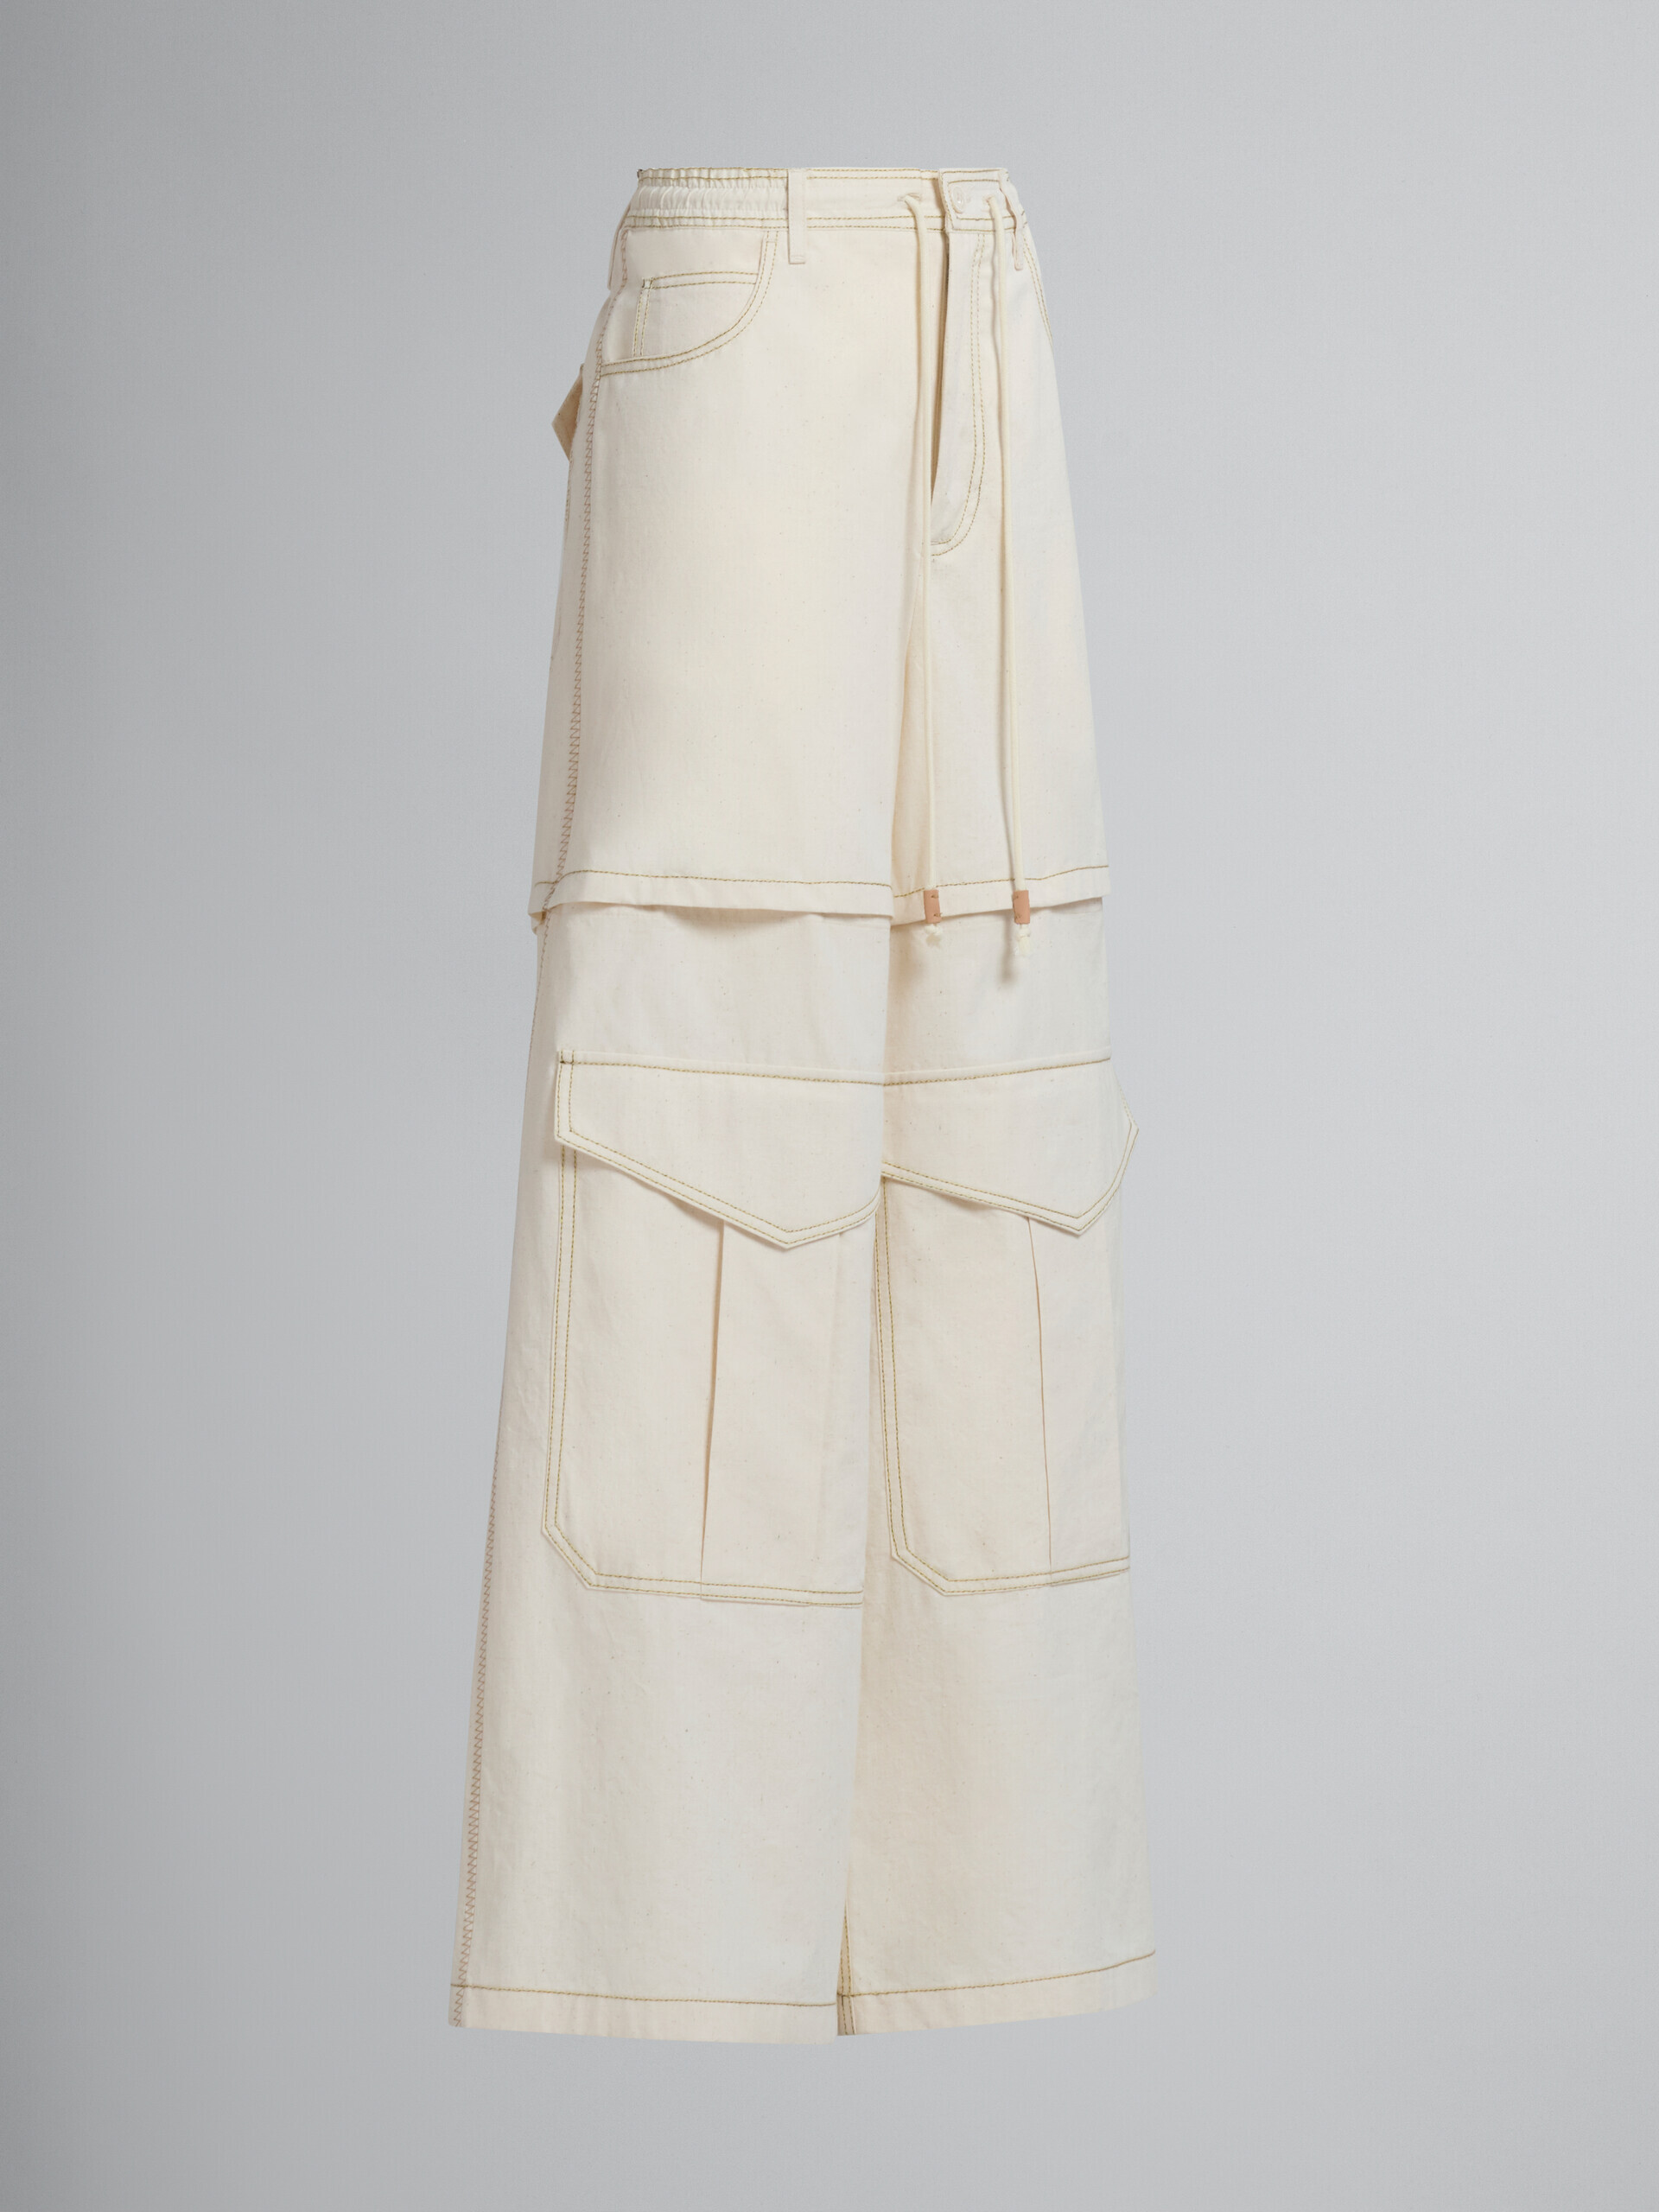 Pantalón cargo de lona de algodón orgánico beige claro con pespuntes Marni - Pantalones - Image 2